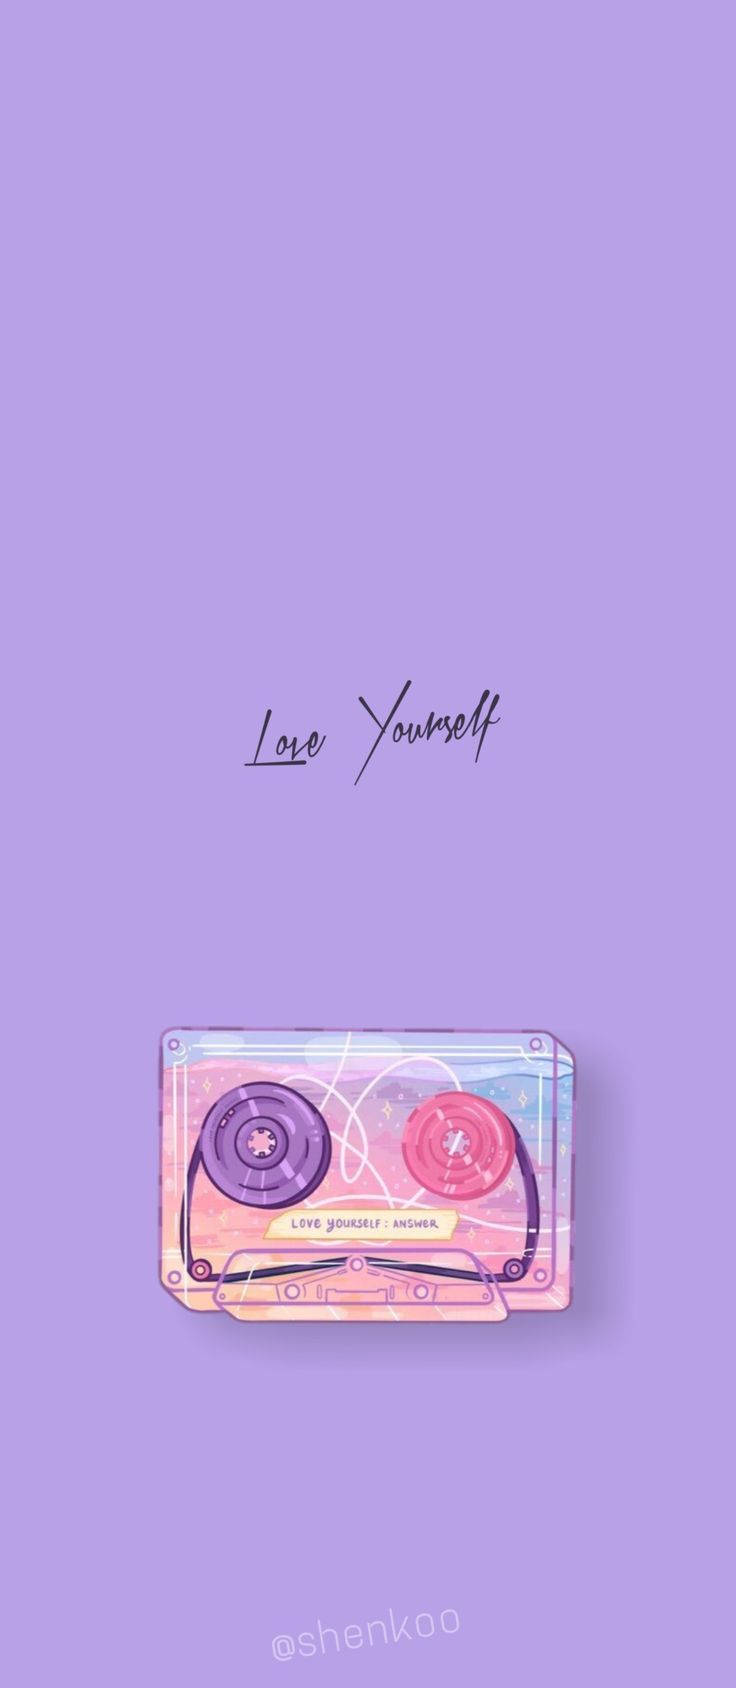 Bts Aesthetic Love Yourself Cassette Tape Wallpaper